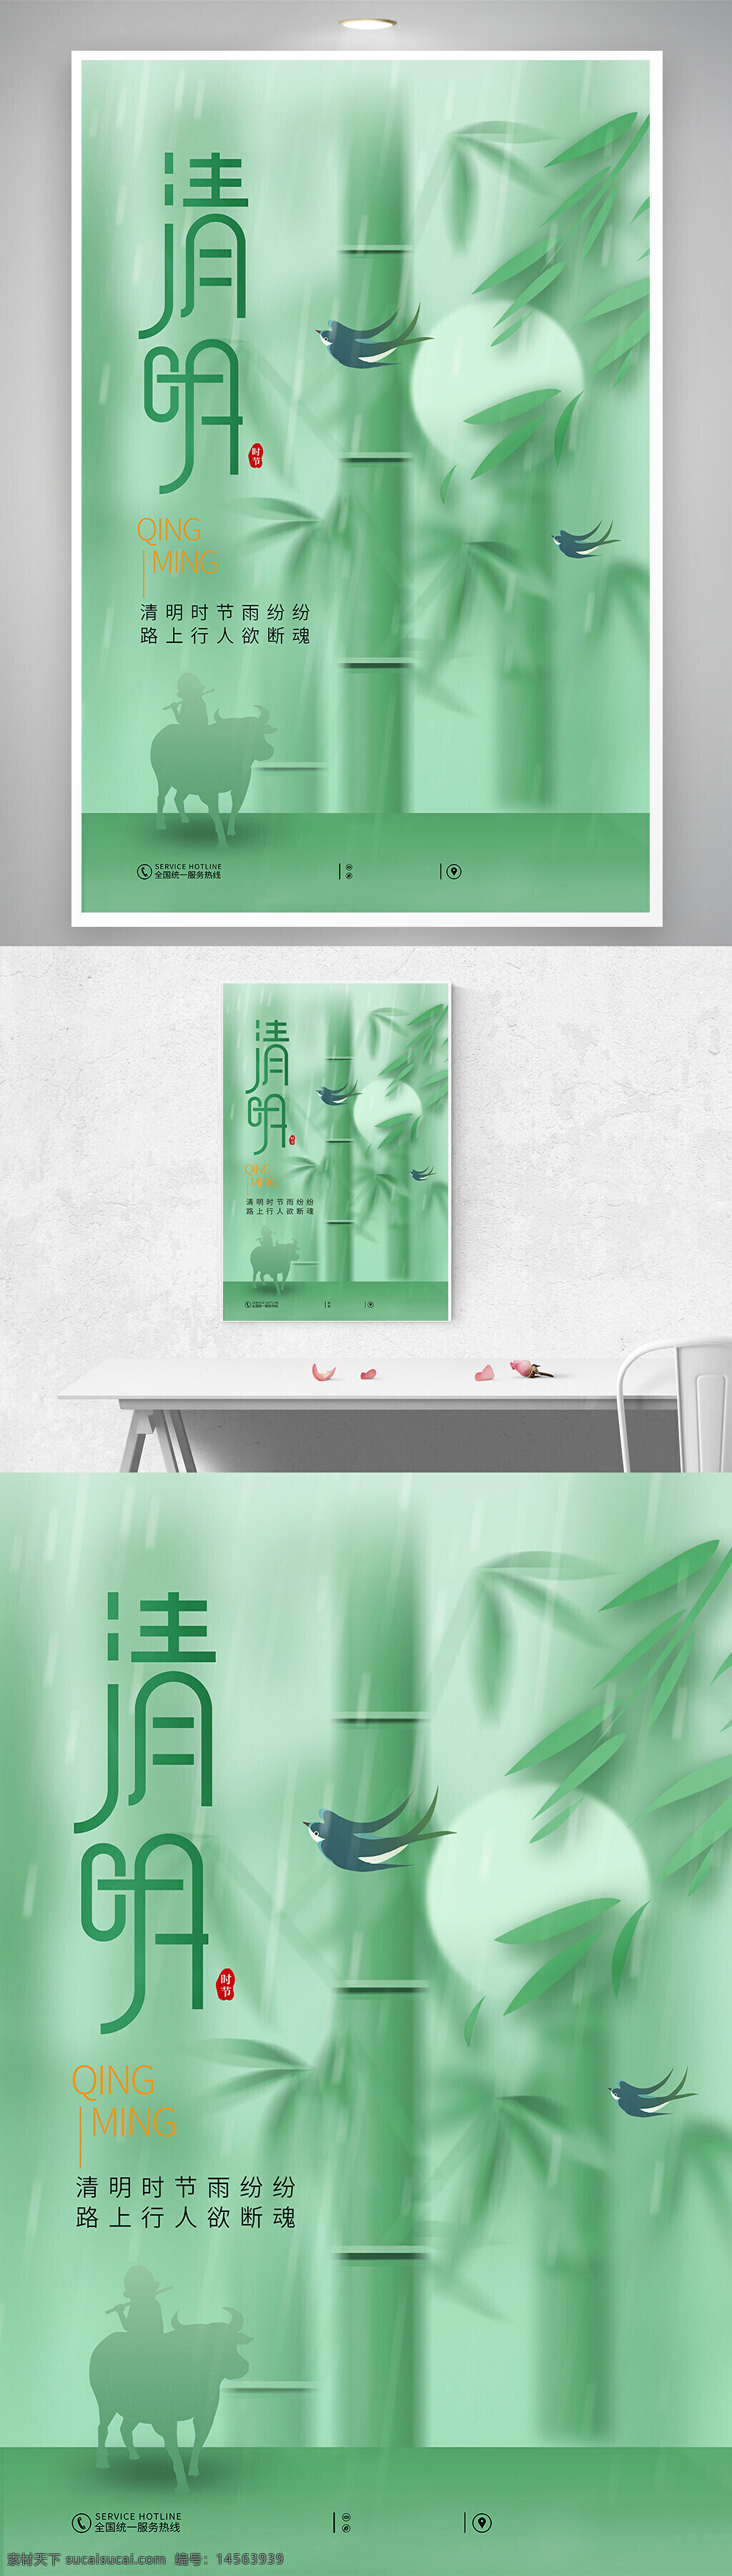 中国风 创意 简约 绿色 清明节 海报 设计